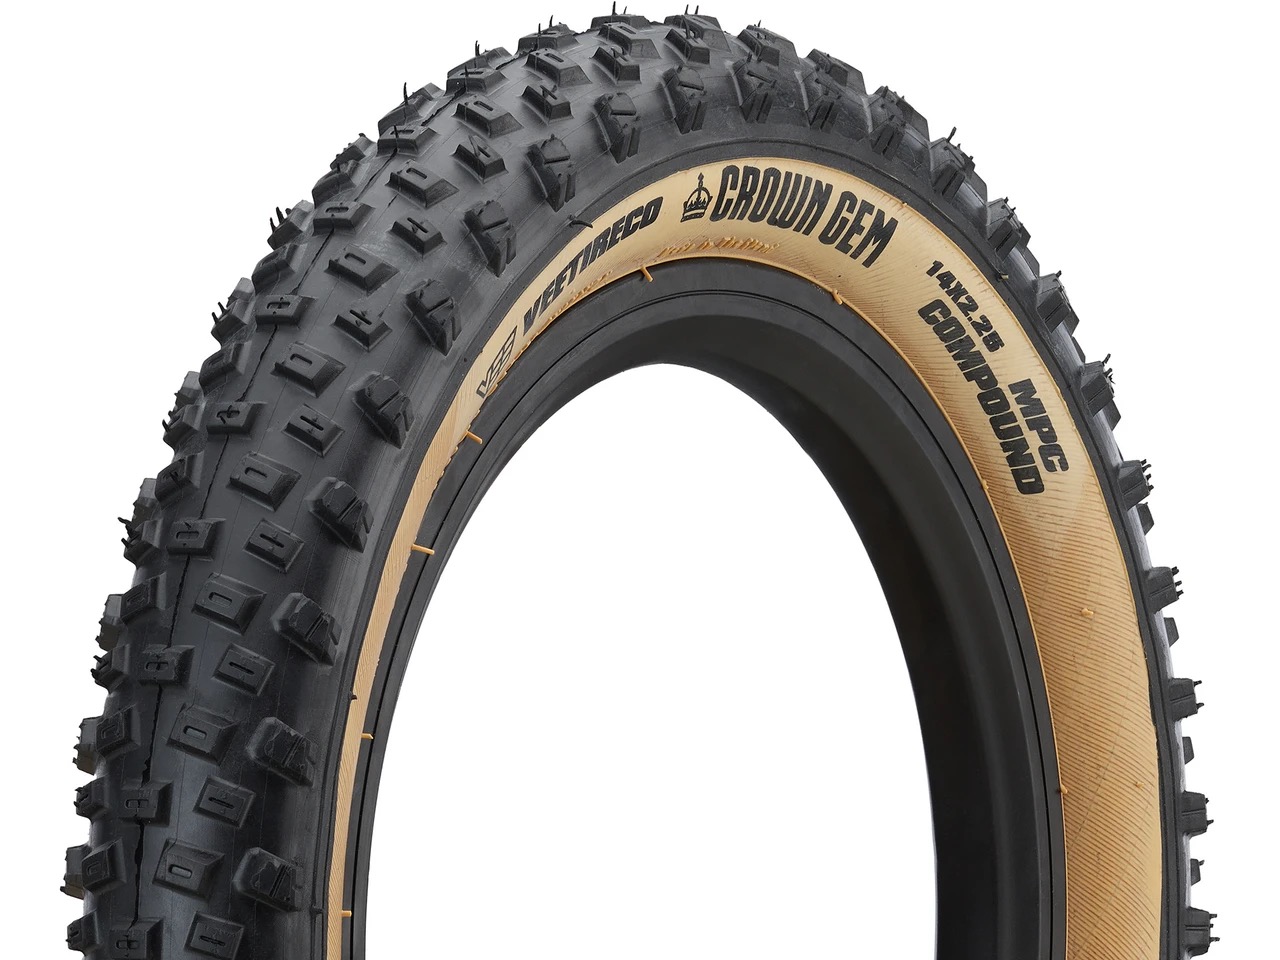 SUCHE: 16 Zoll Reifen mit ordentlich Stollen und über 2 Zoll | MTB-News.de  | IBC Mountainbike Forum